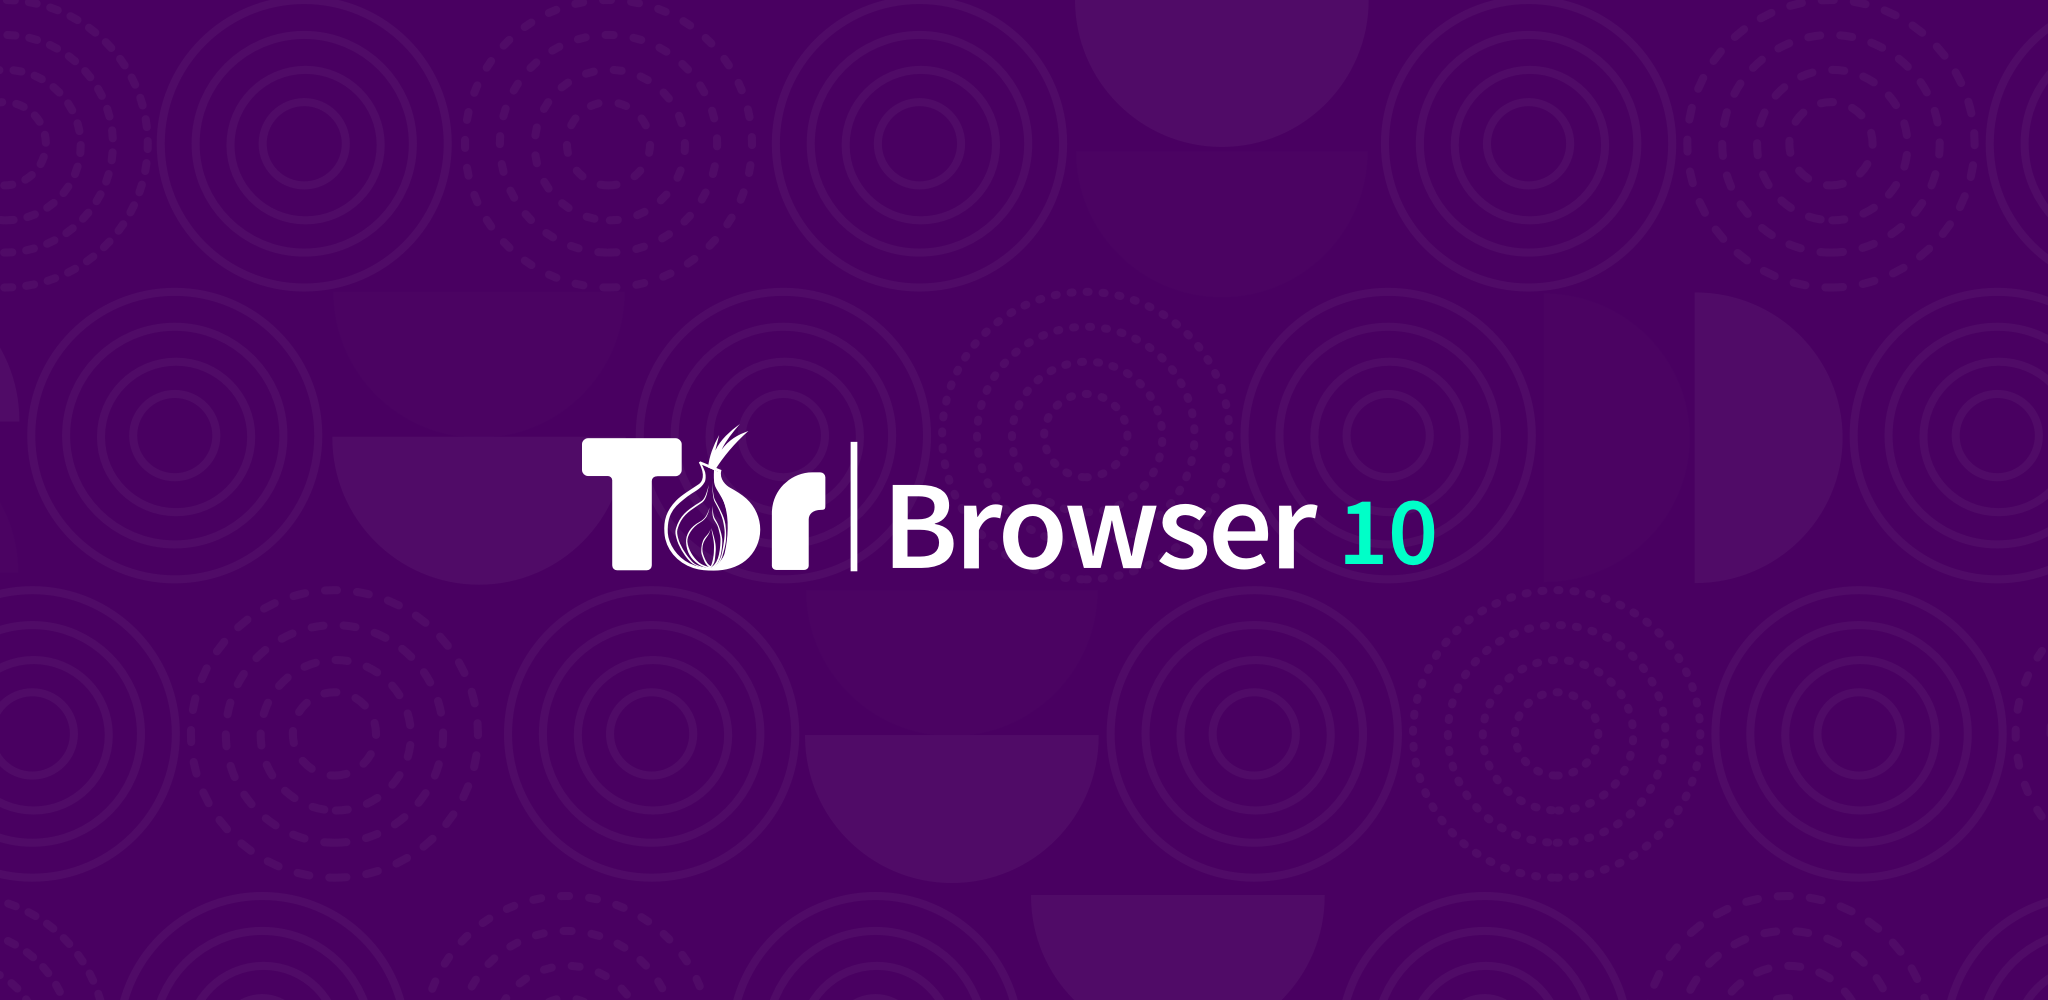 Tor browser обновление mega2web как запустить несколько браузеров тор mega